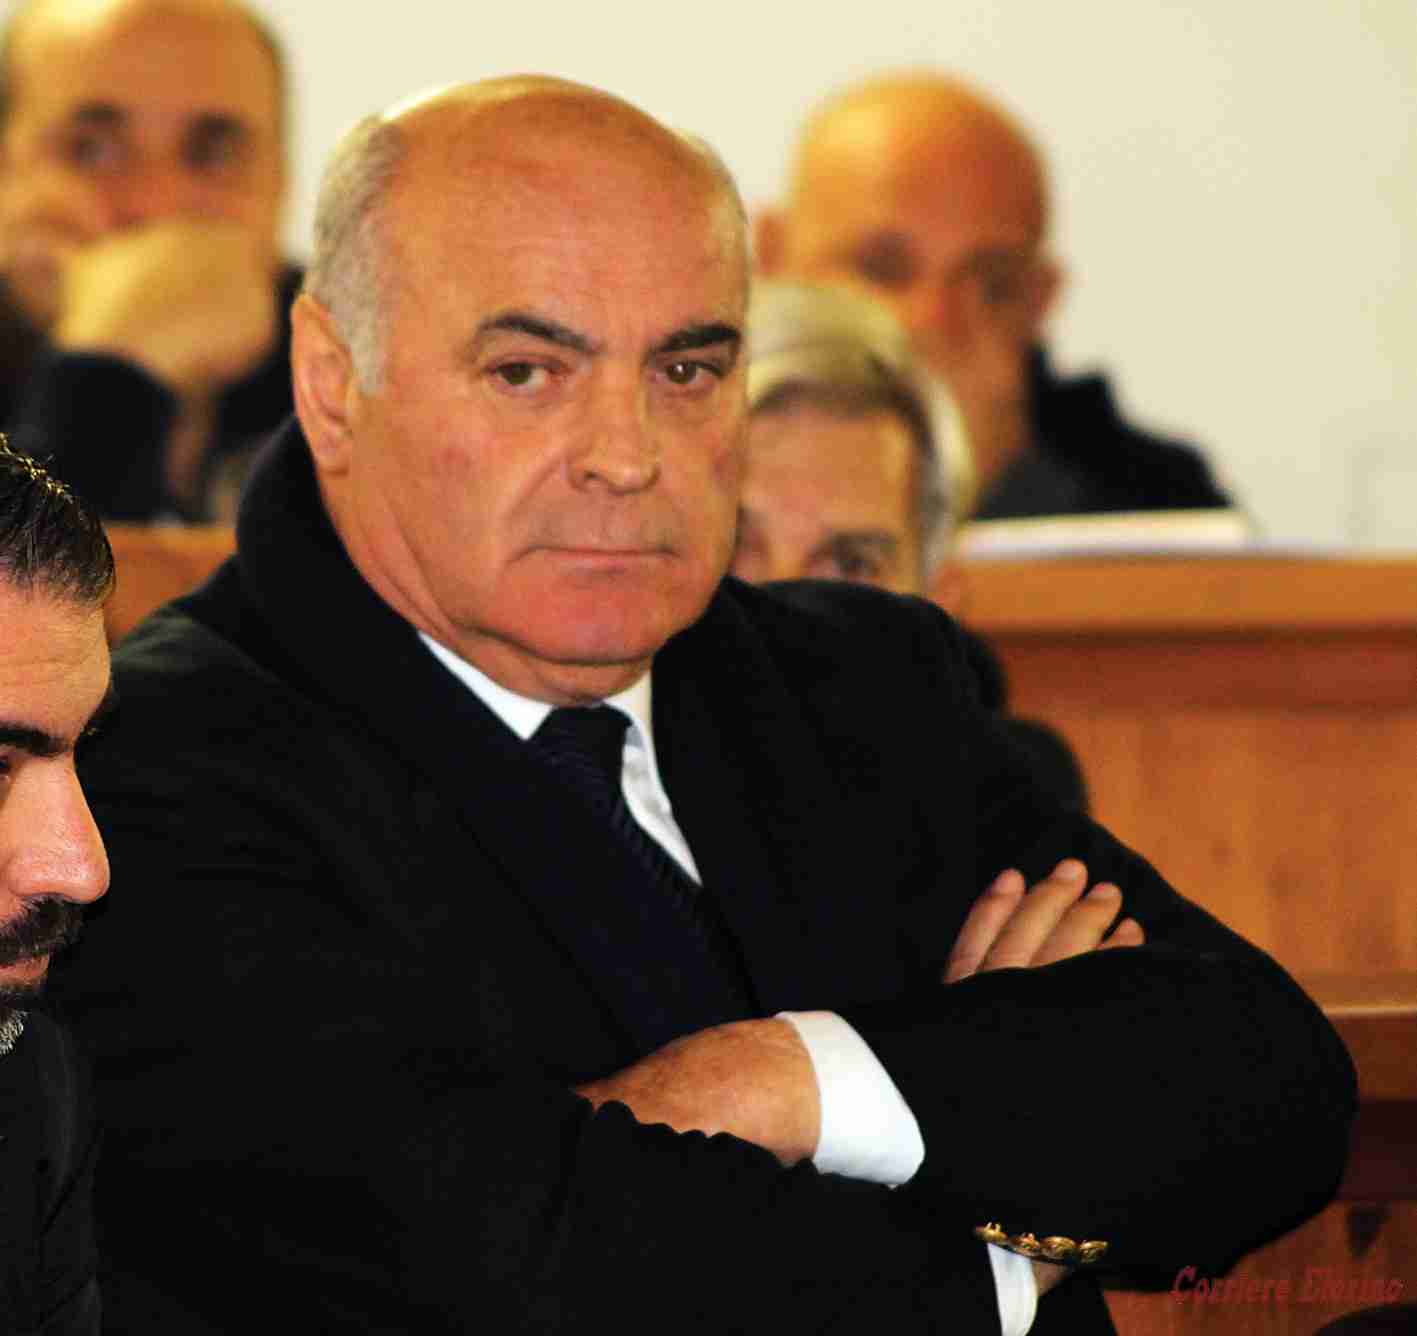 Operazione “Acqua salata”: chiesta la condanna a 5 anni e 4 mesi per l’ex deputato Giuseppe Gennuso